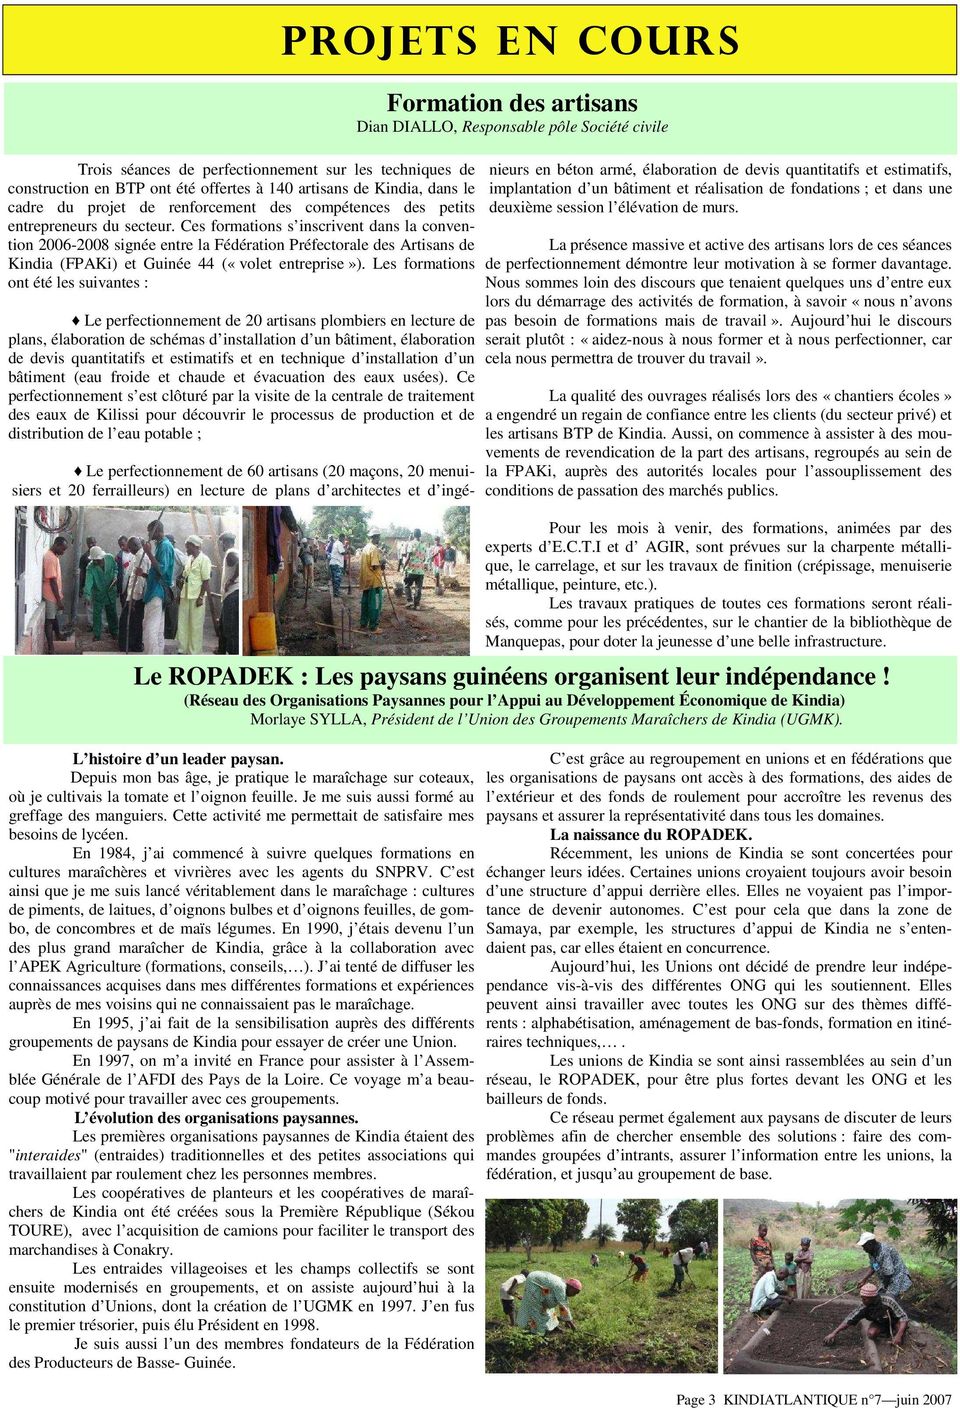 Ces formations s inscrivent dans la convention 2006-2008 signée entre la Fédération Préfectorale des Artisans de Kindia (FPAKi) et Guinée 44 («volet entreprise»).